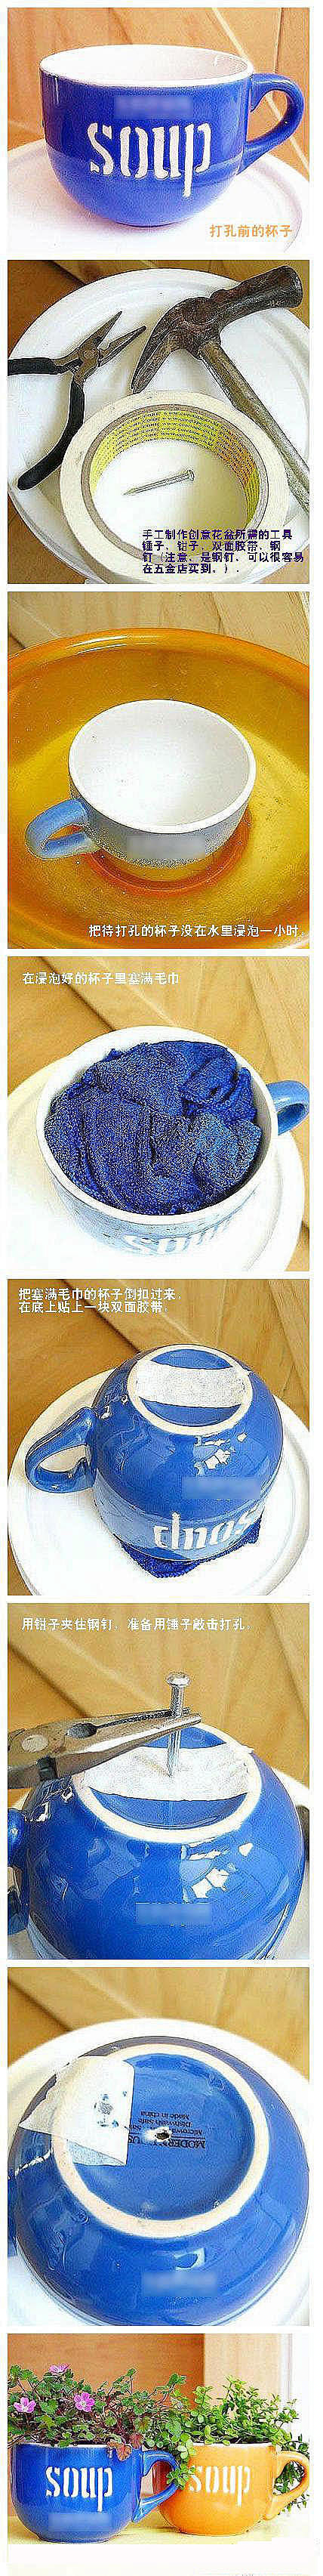 茶杯变小花盆——这个给瓷杯打孔的办法不错...